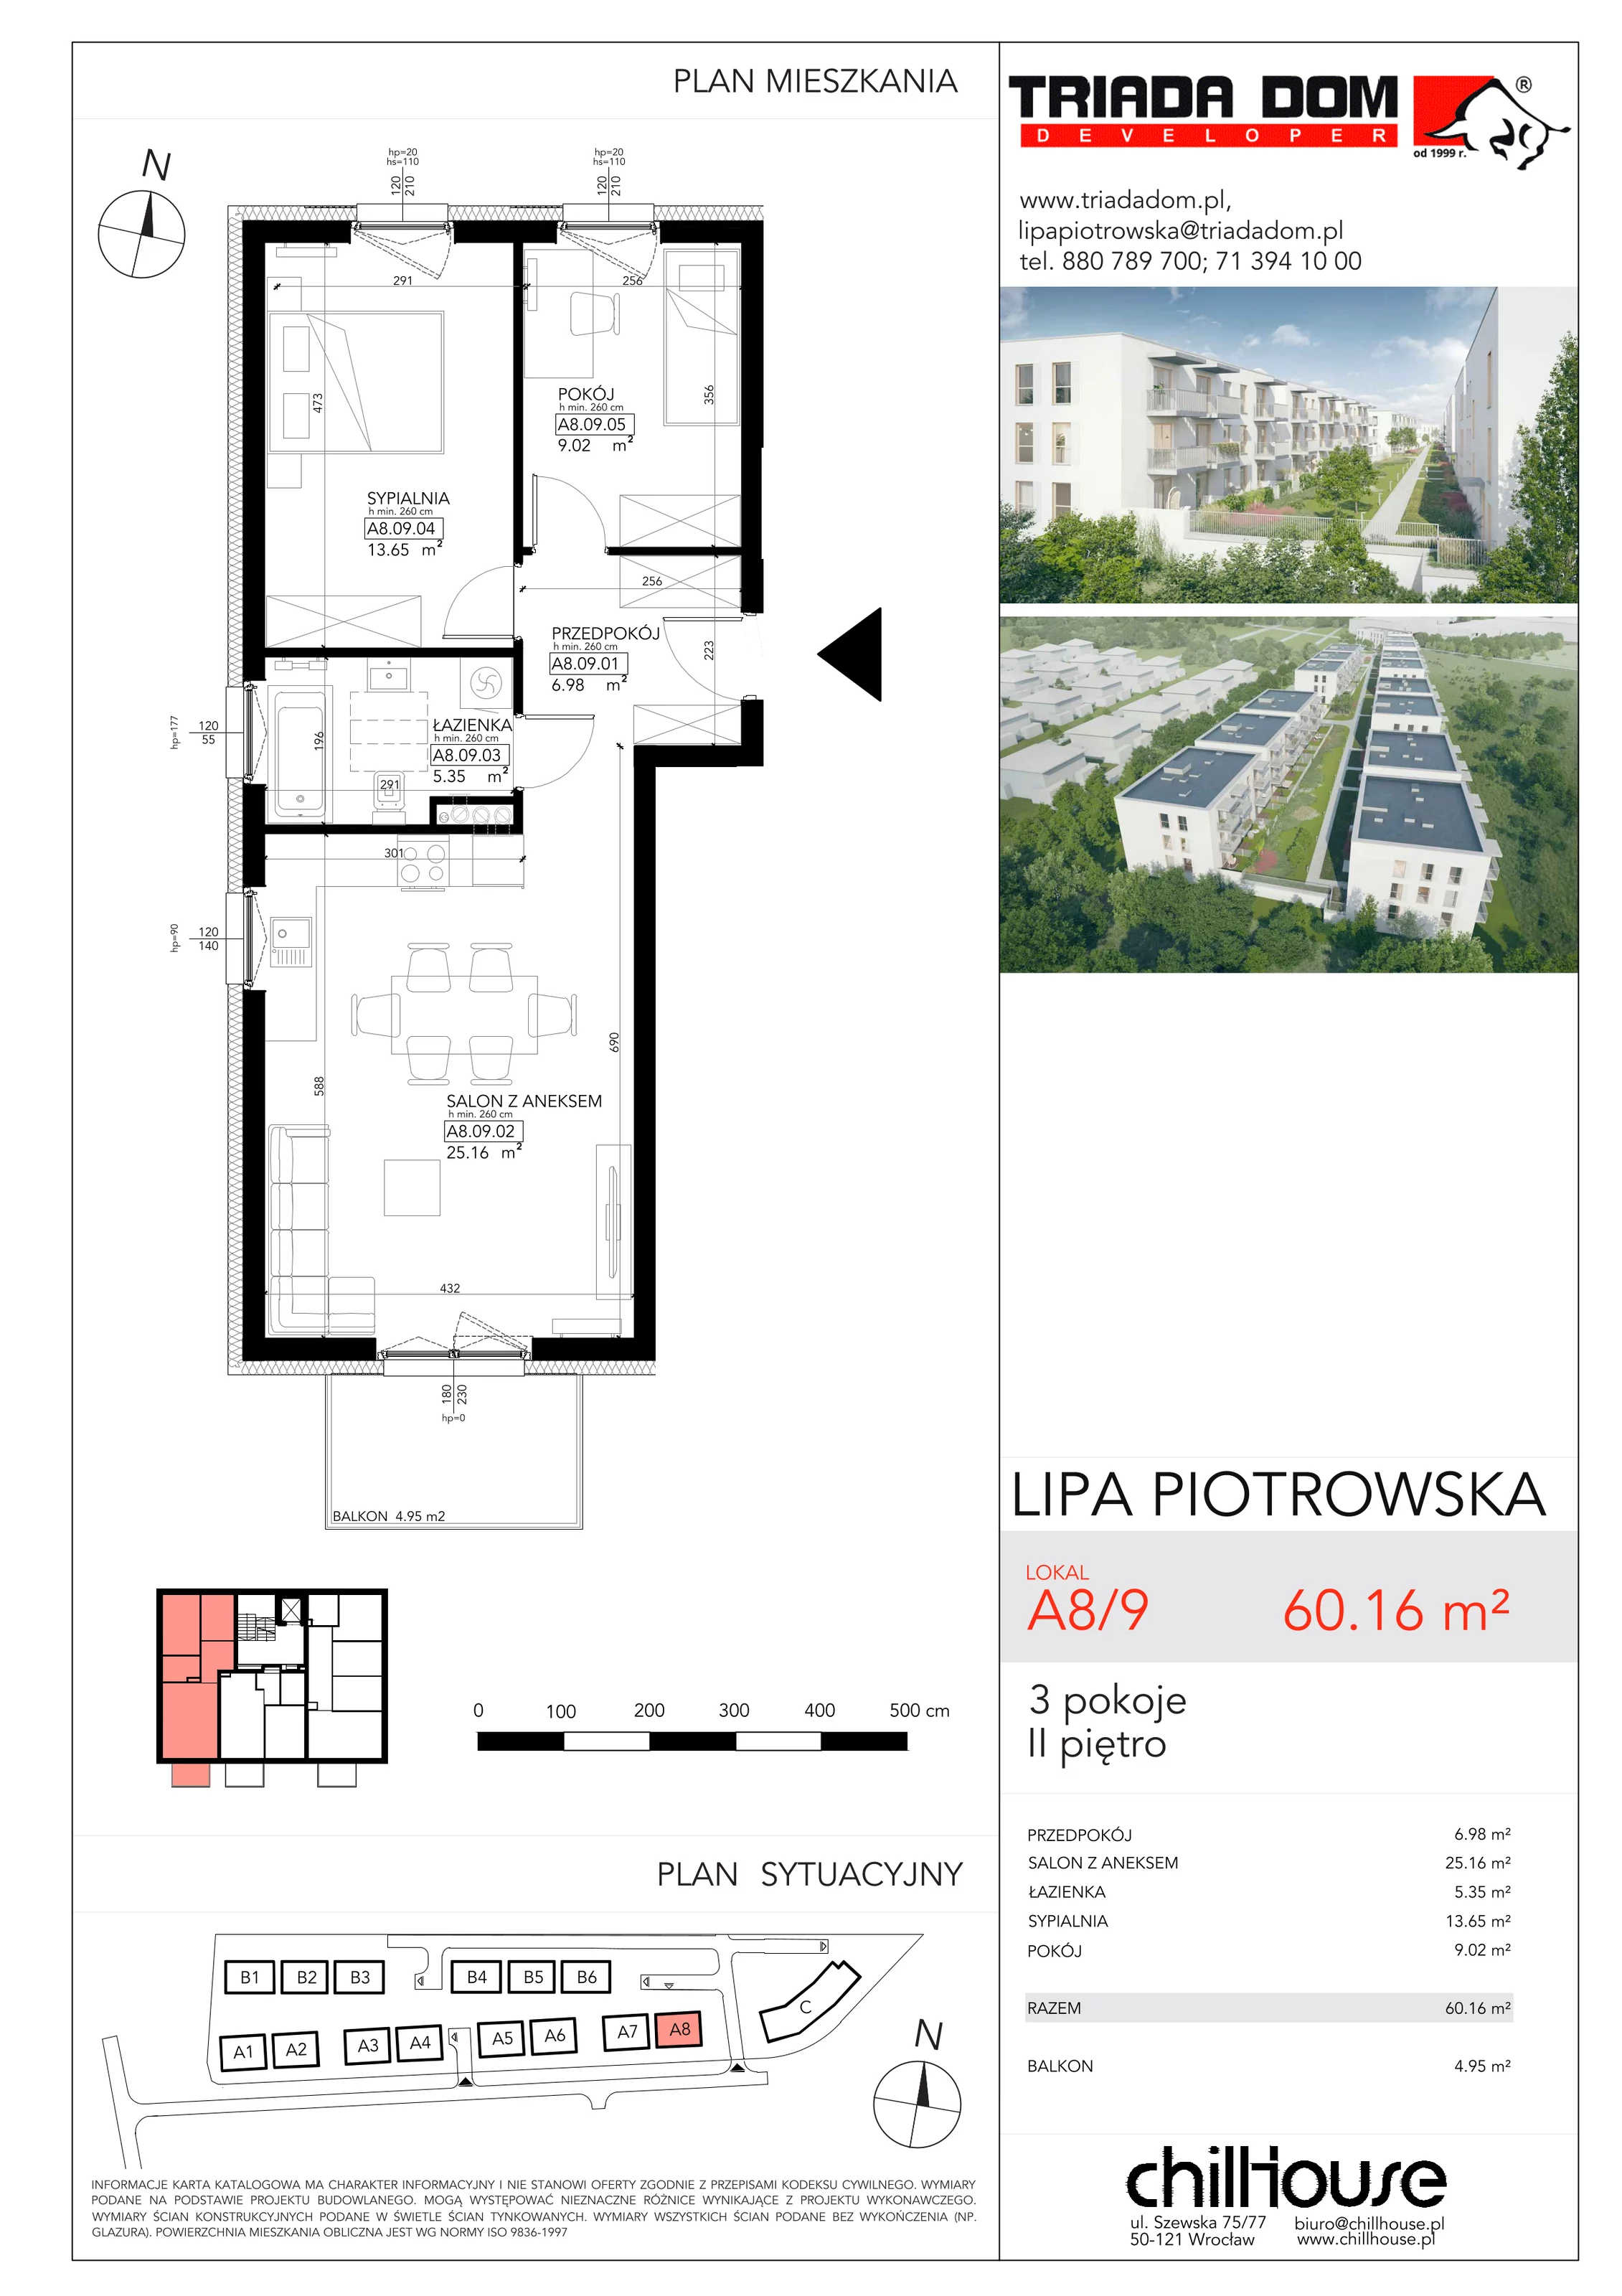 Mieszkanie 60,16 m², piętro 2, oferta nr A89, Lipa Piotrowska, Wrocław, Lipa Piotrowska, ul. Lawendowa / Melisowa